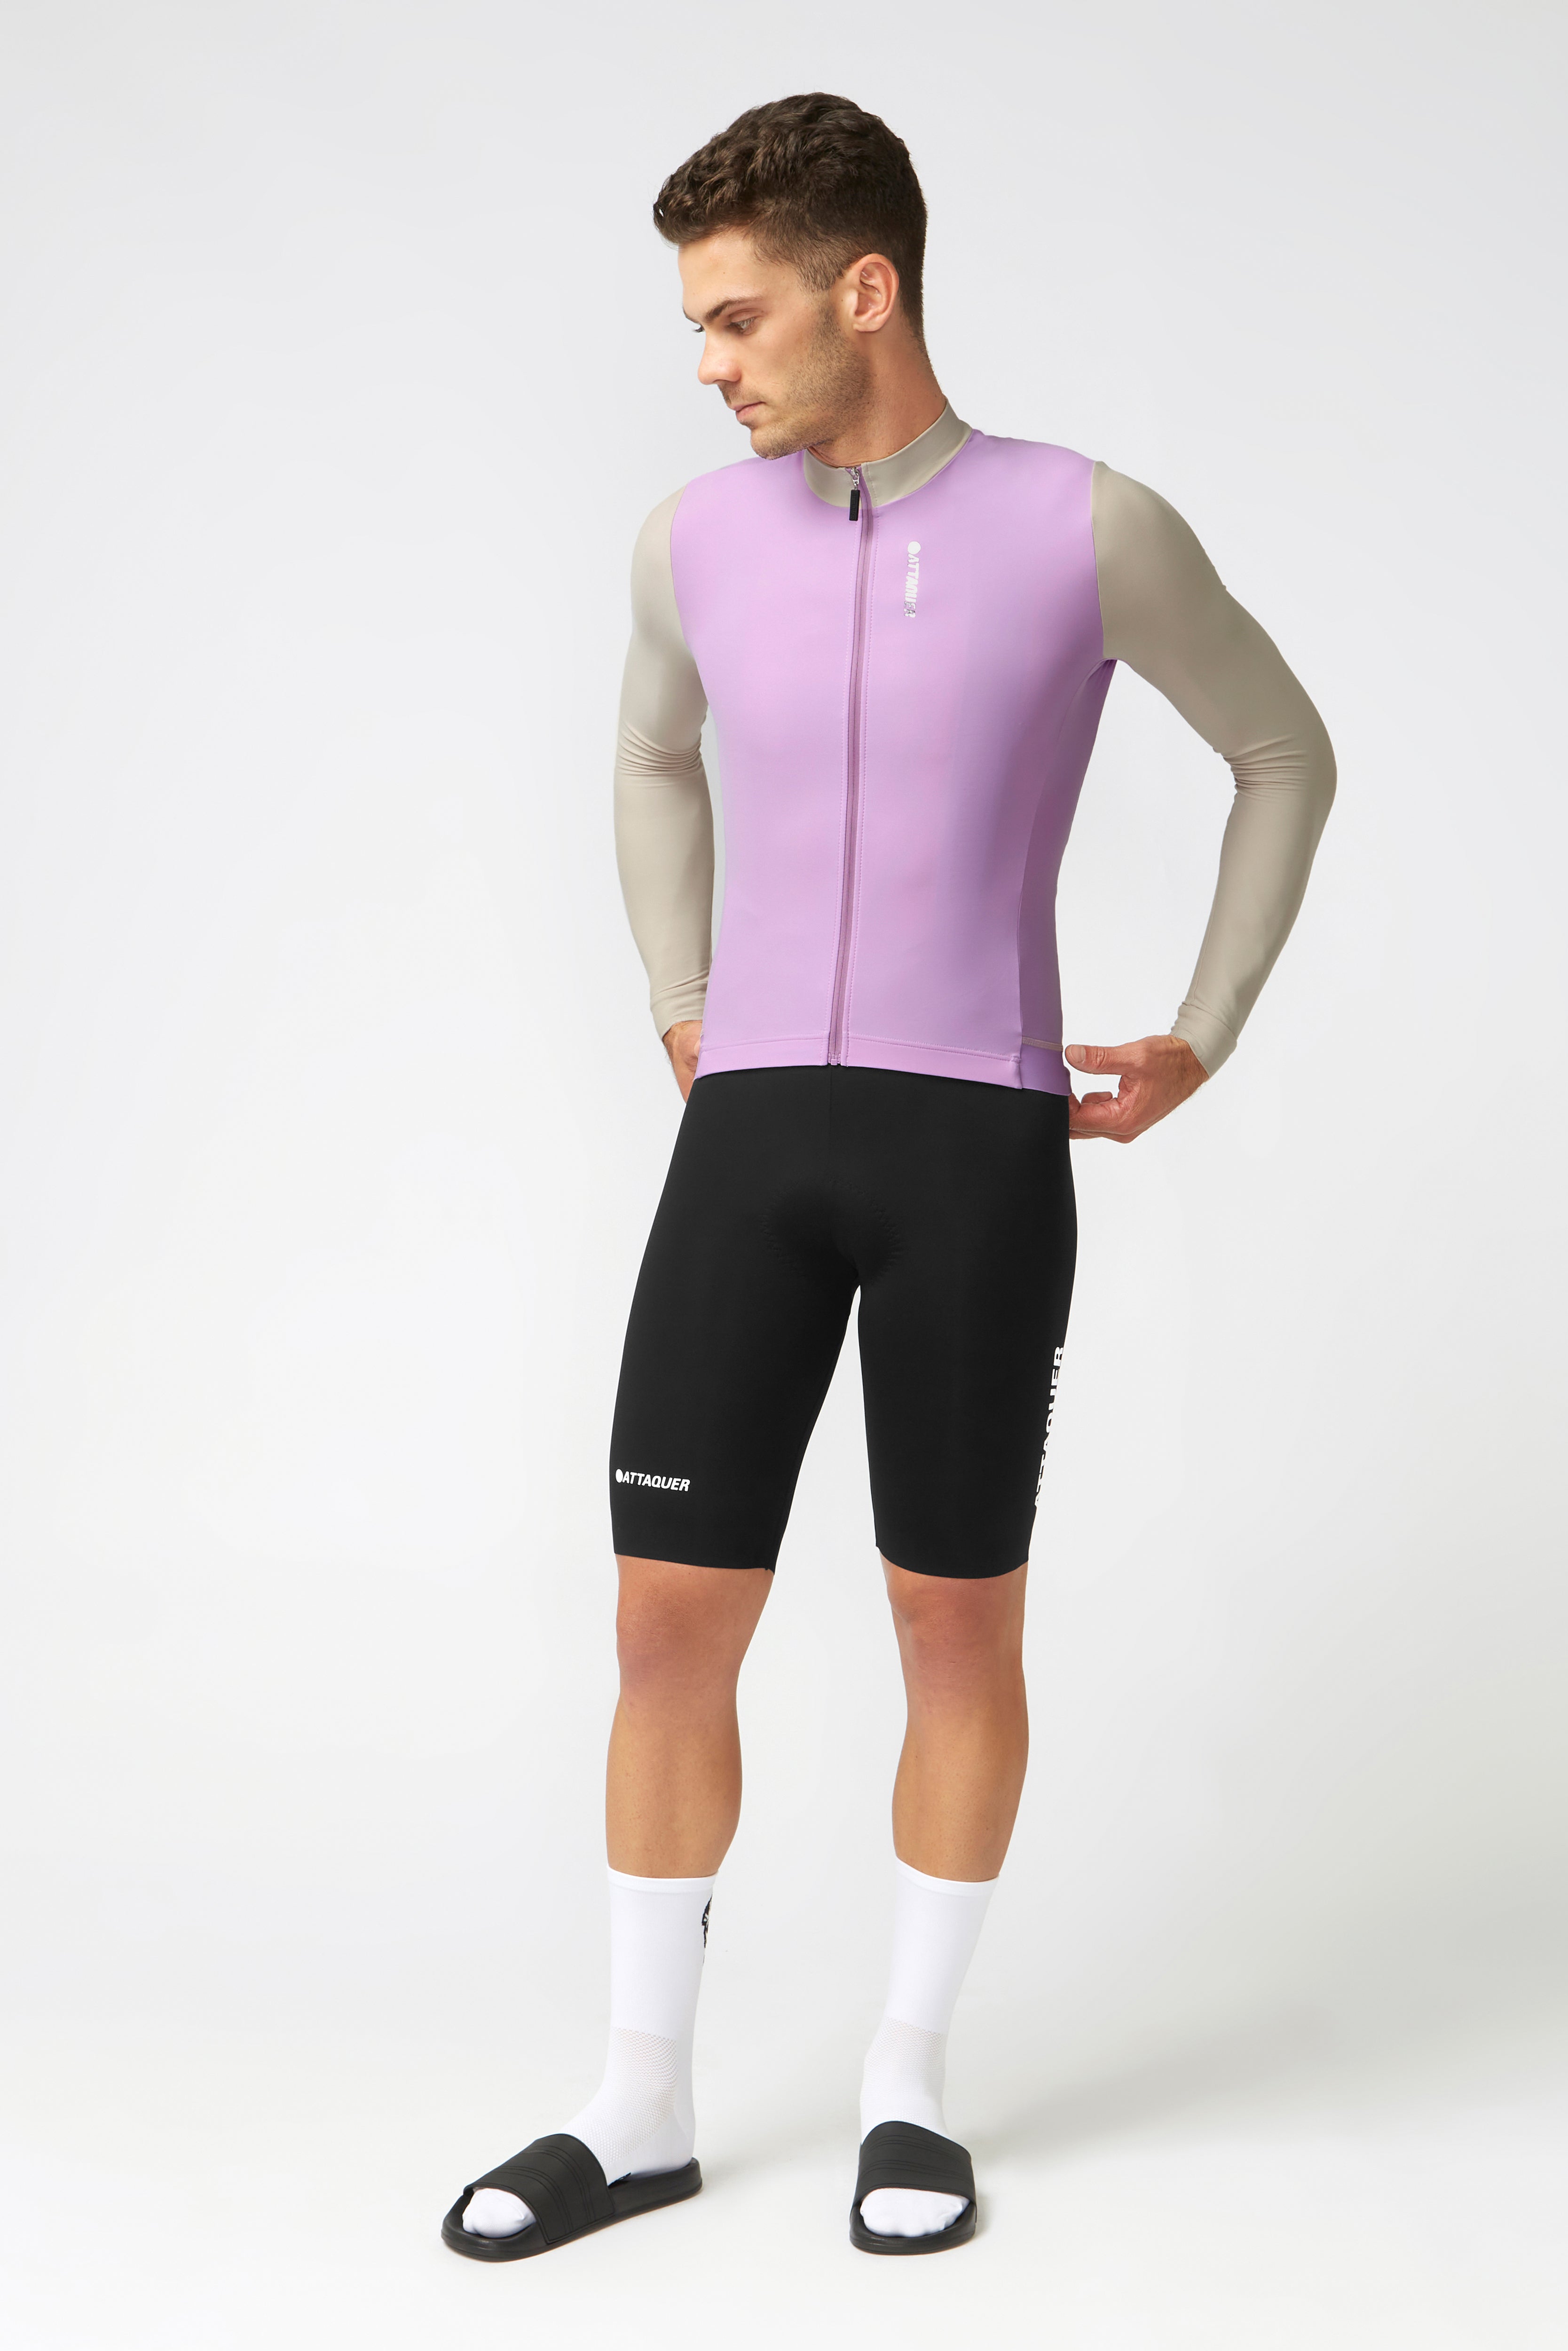 Race Reflex Long Sleeved Jersey Lilac/Beige | Attaquer